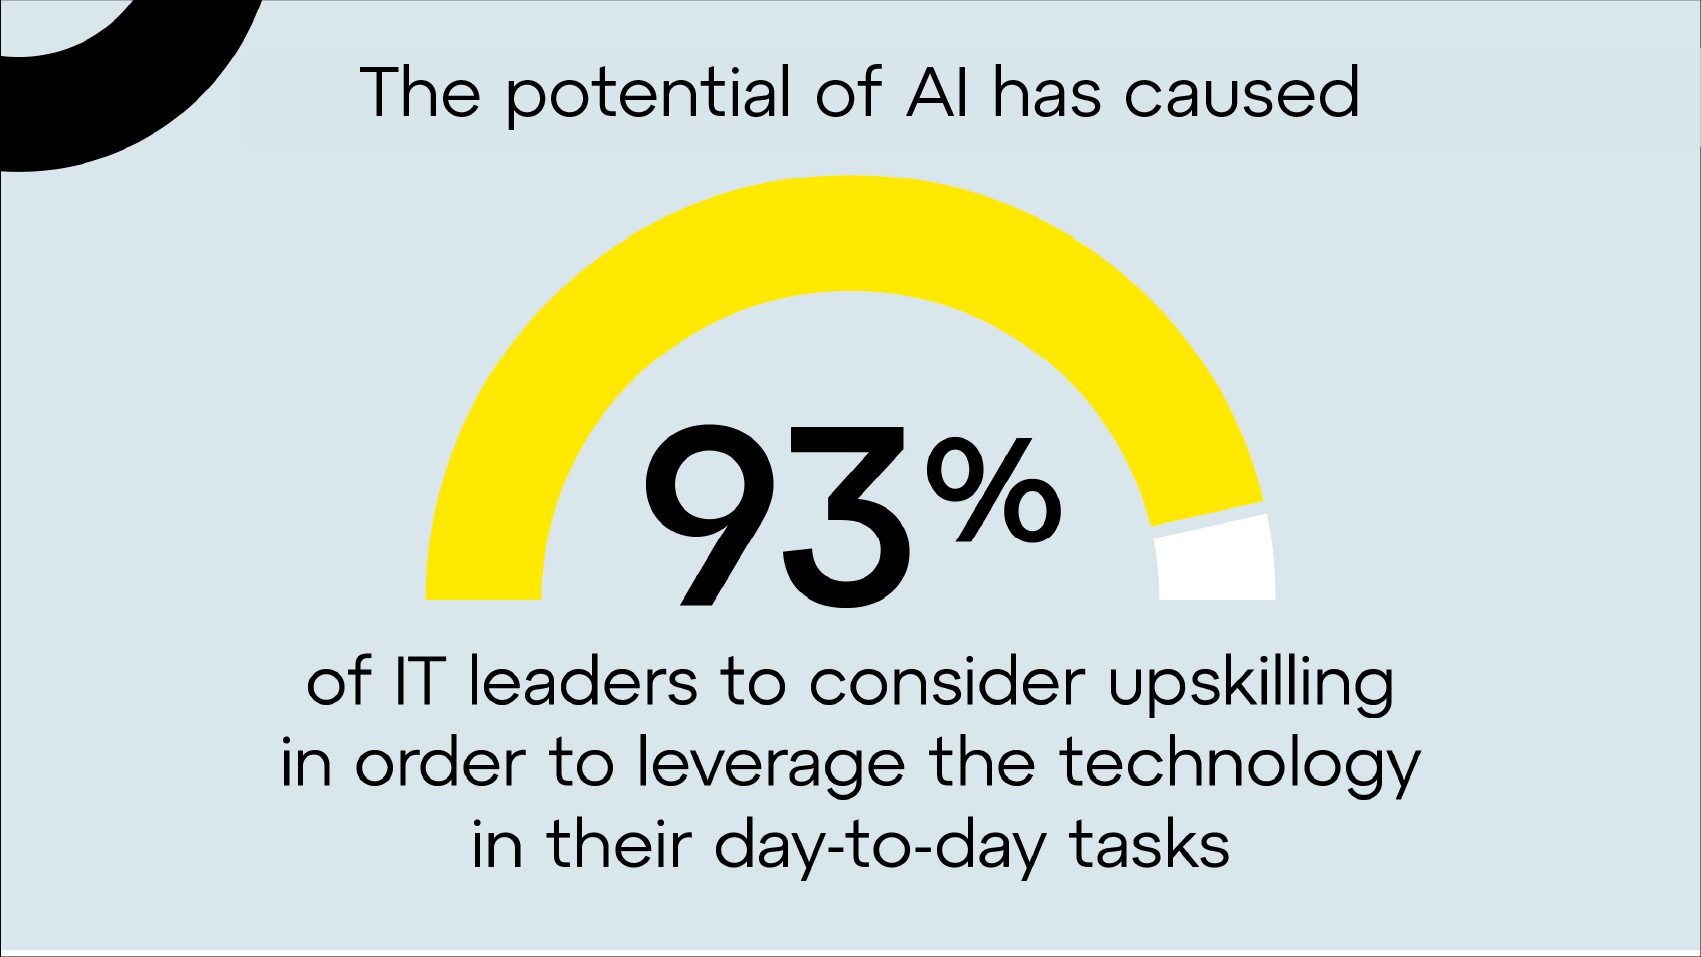 Il potenziale dell'IA ha fatto sì che il 93% dei responsabili IT prendesse in considerazione l'aggiornamento delle competenze al fine di sfruttare la tecnologia nelle attività quotidiane.